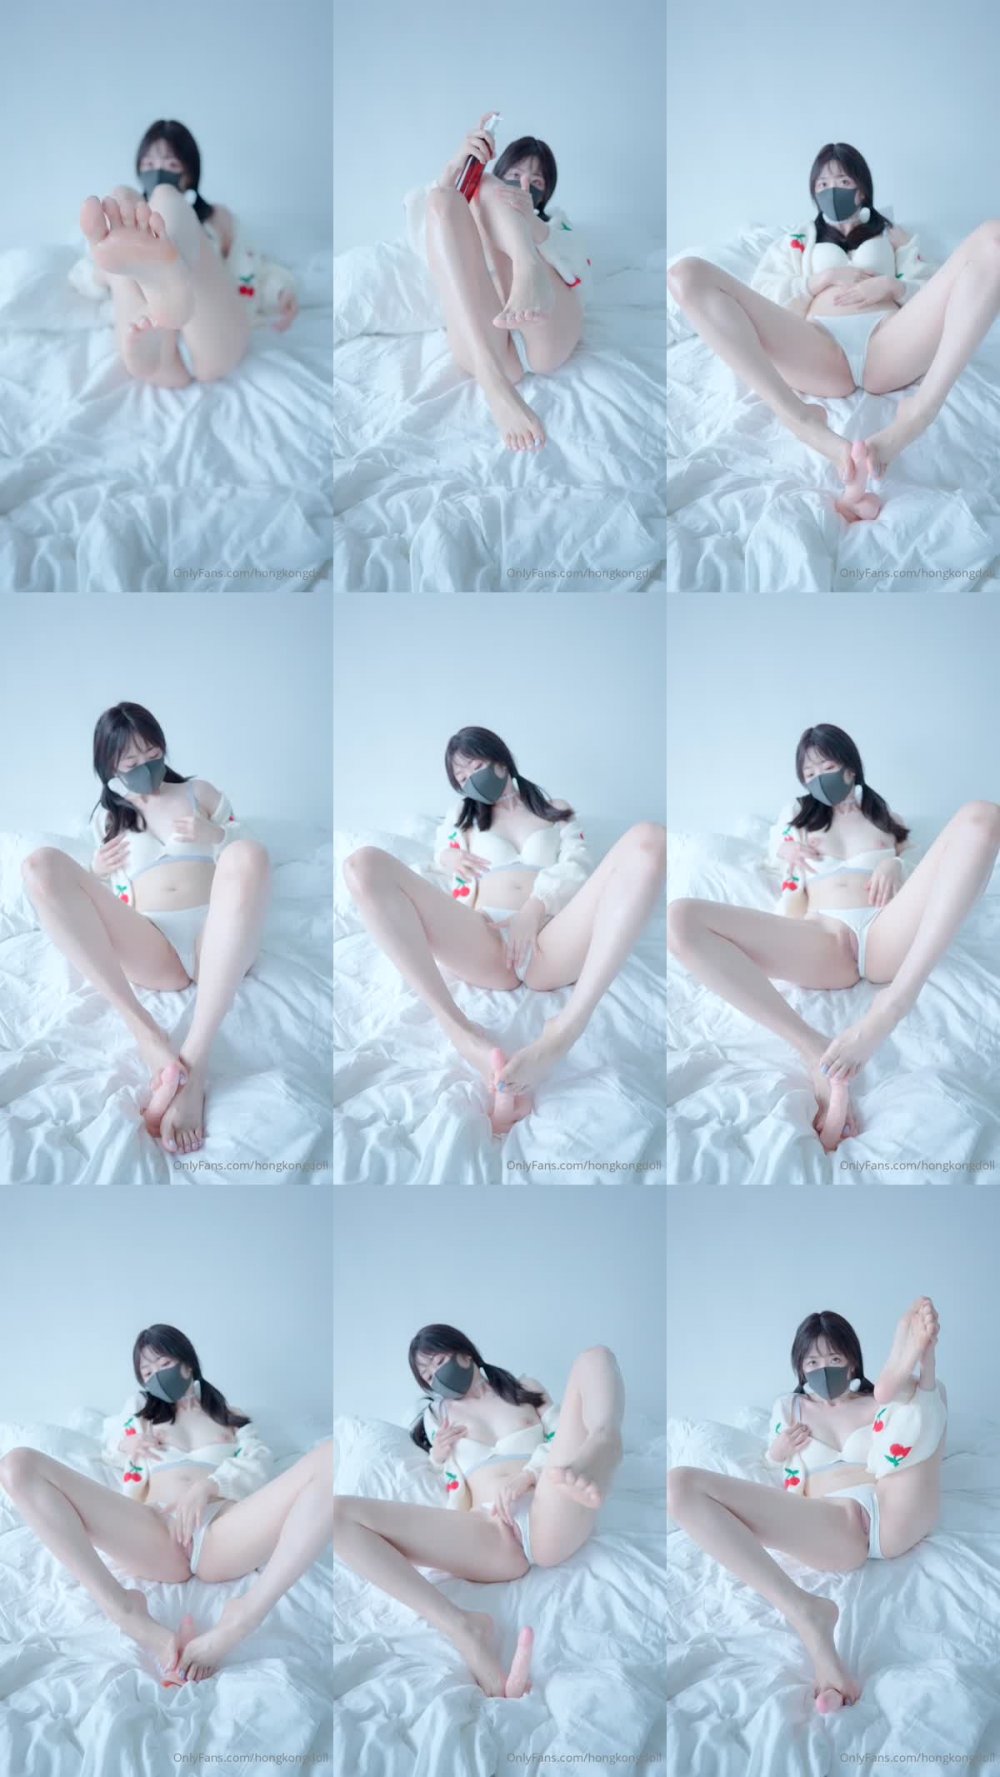 +++ HKD-53 會員私信短片 如果你喜歡裸足的話